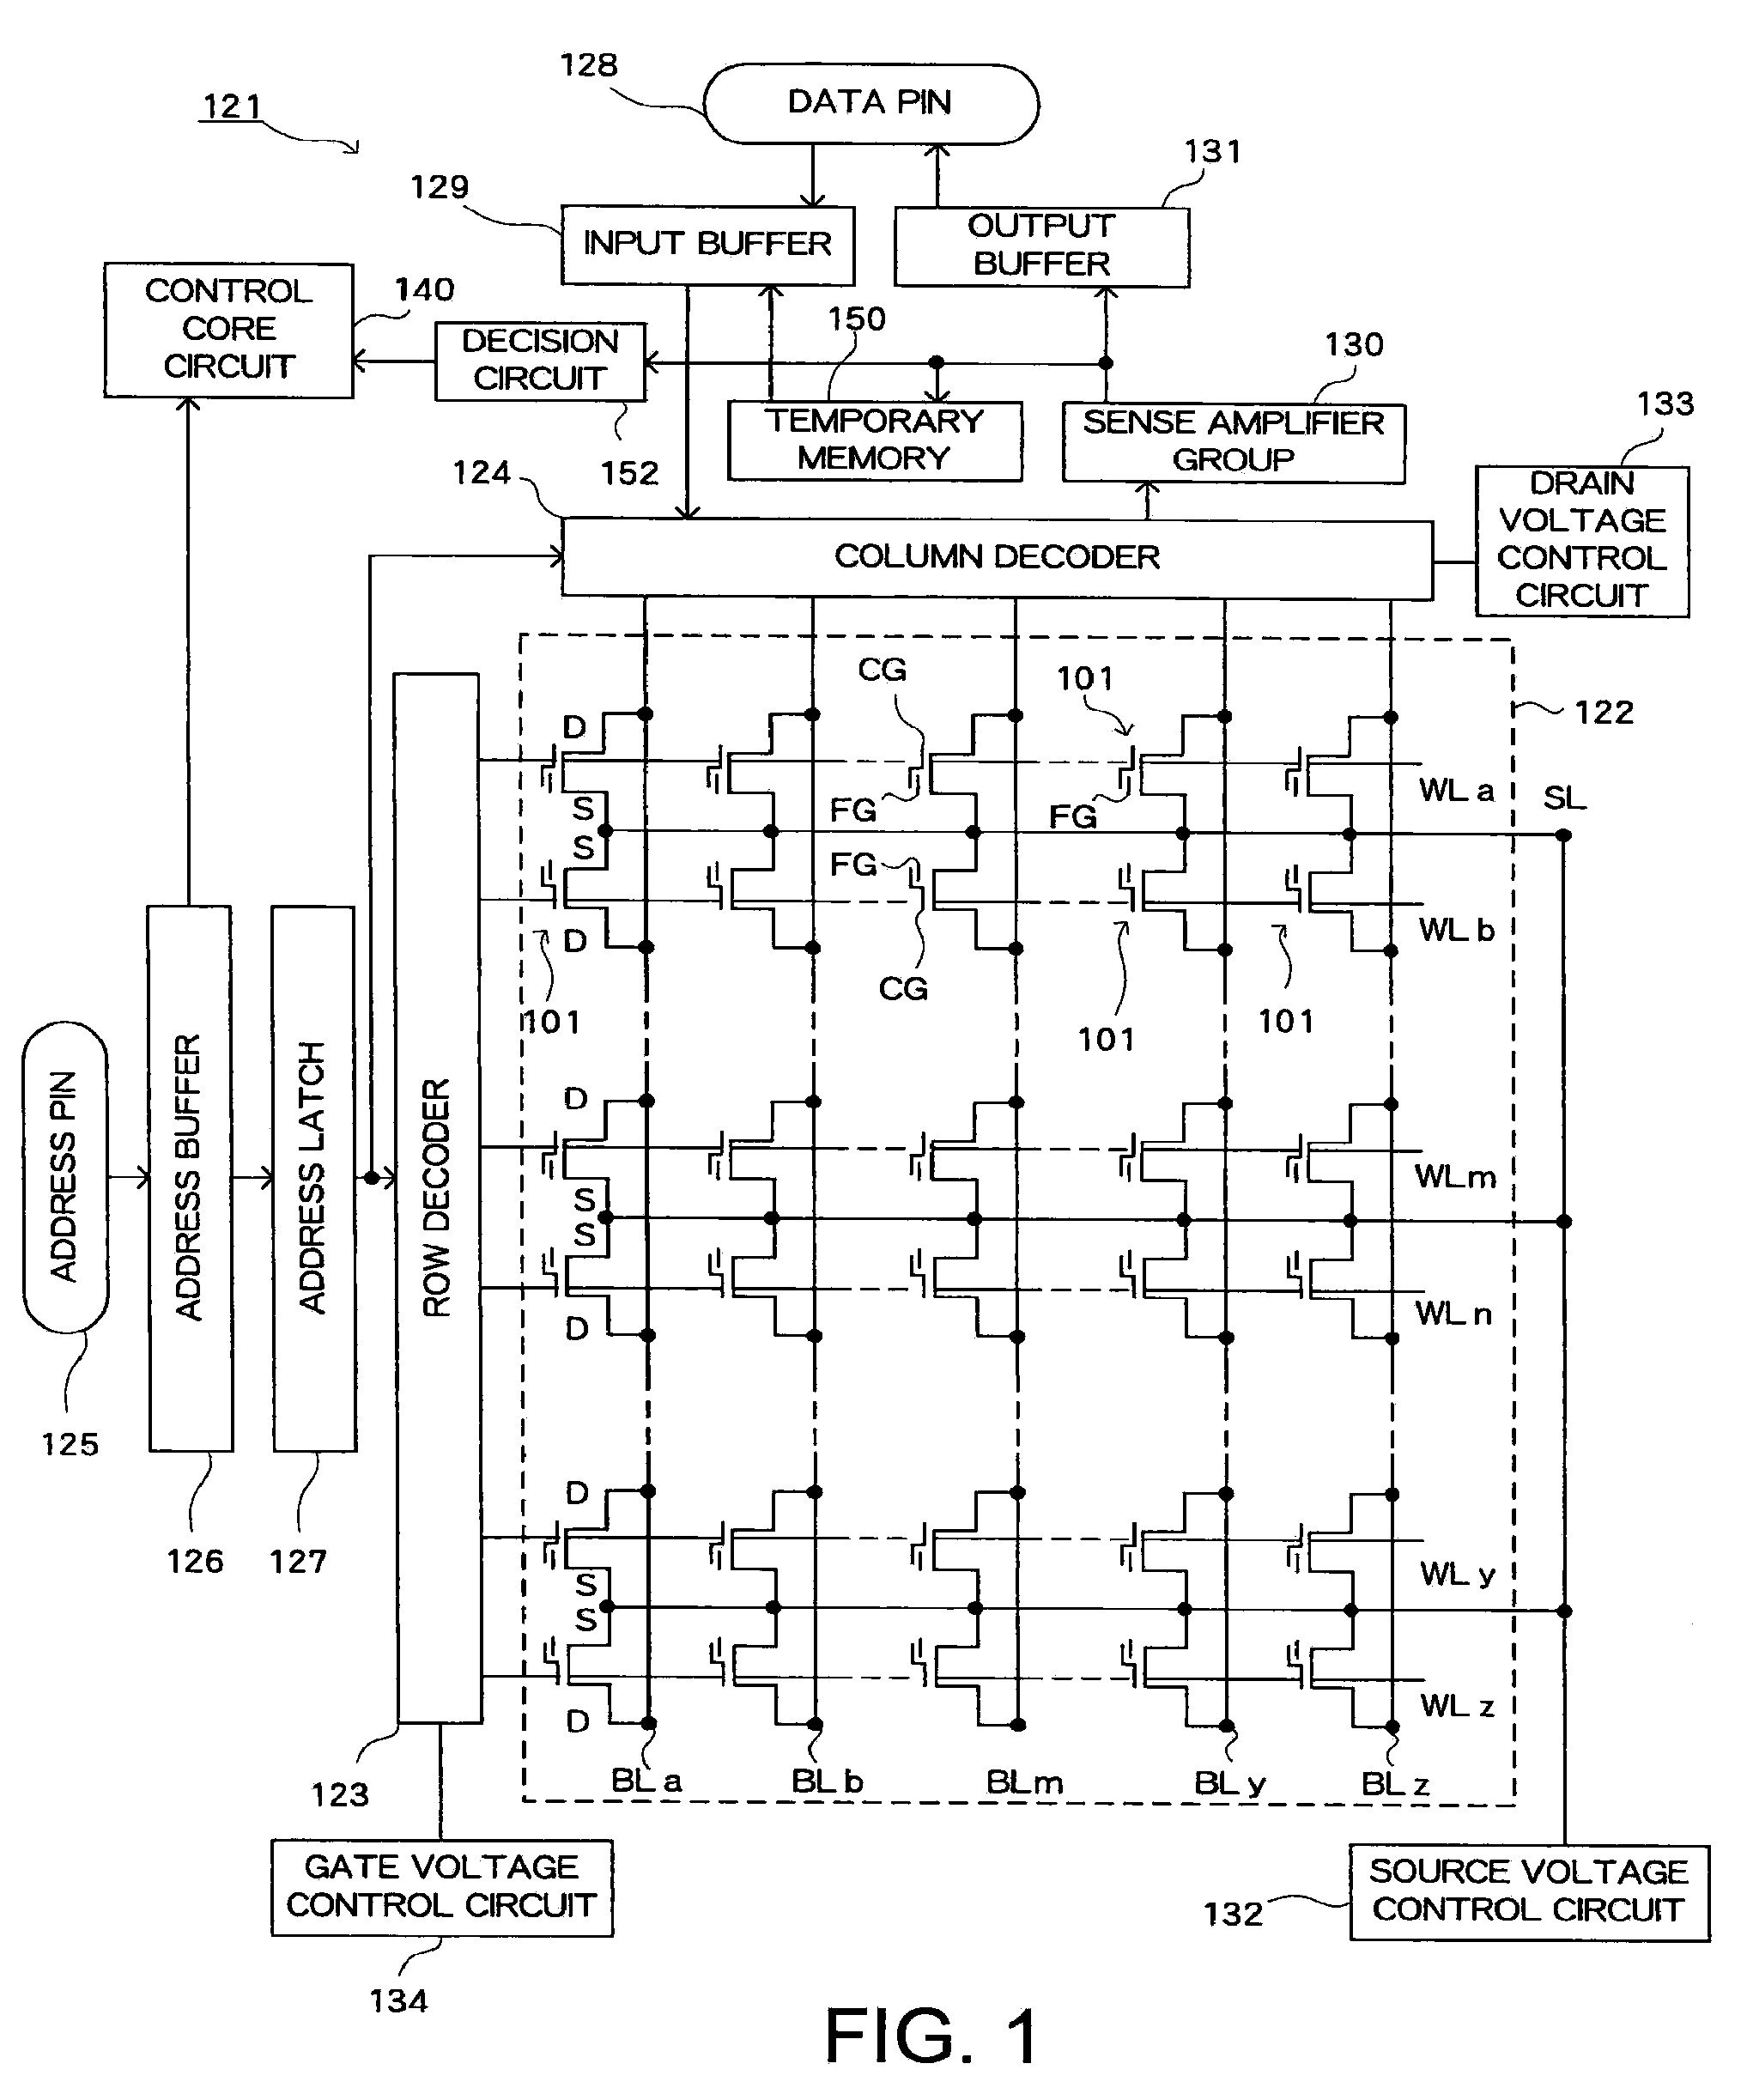 Non-volatile memory control circuit